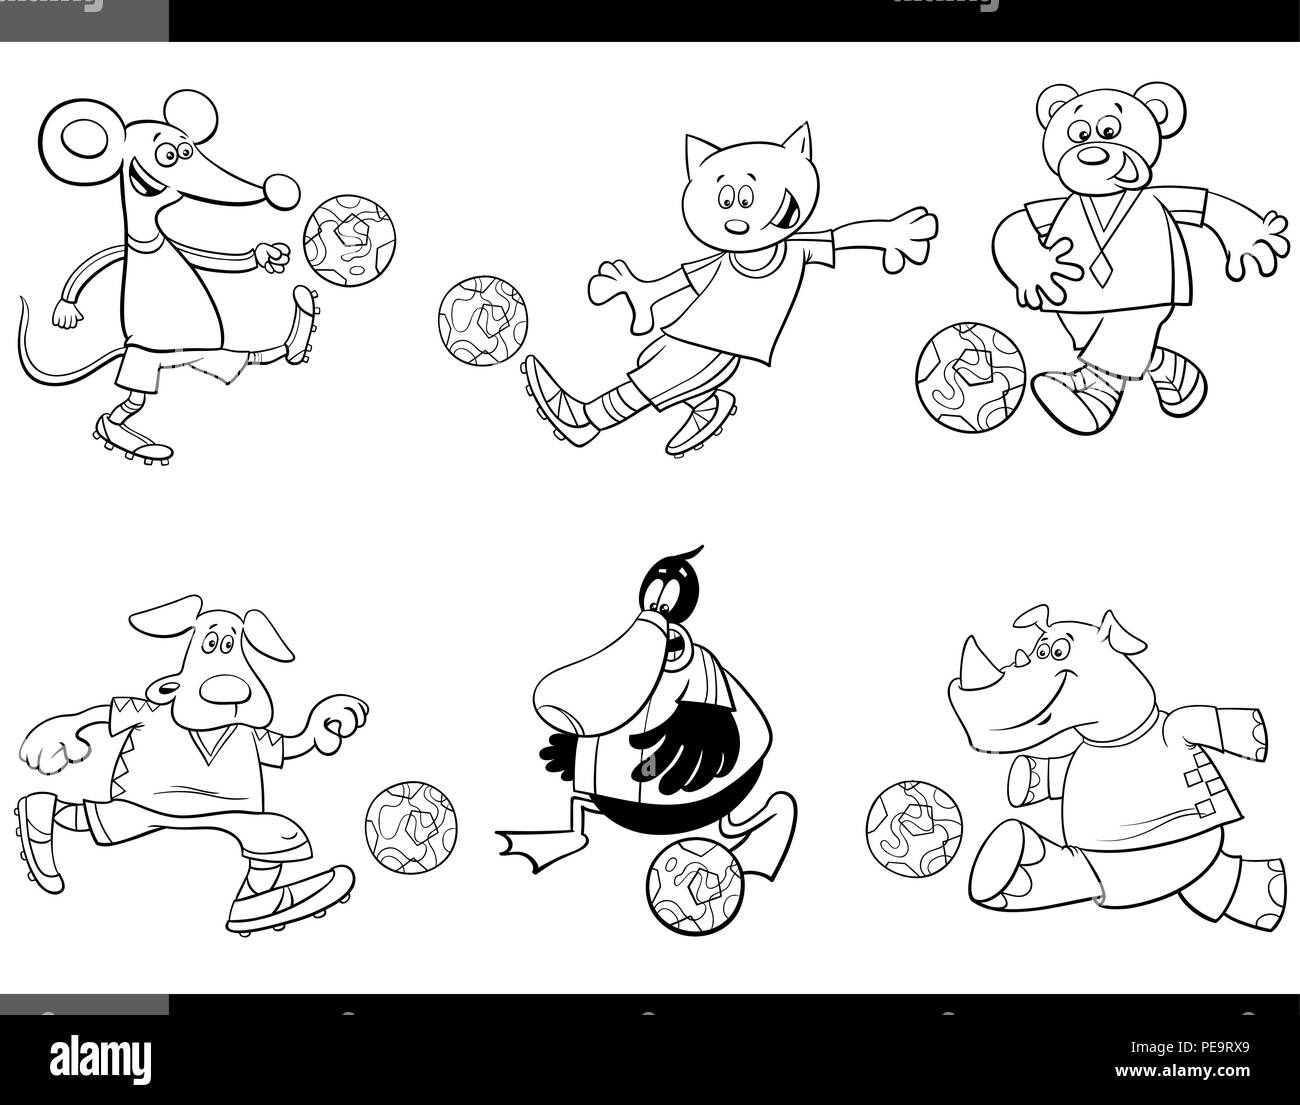 Bianco e Nero Cartoon illustrazioni di animali il calcio o il giocatore di calcio caratteri con sfere di pagina di colorazione Illustrazione Vettoriale